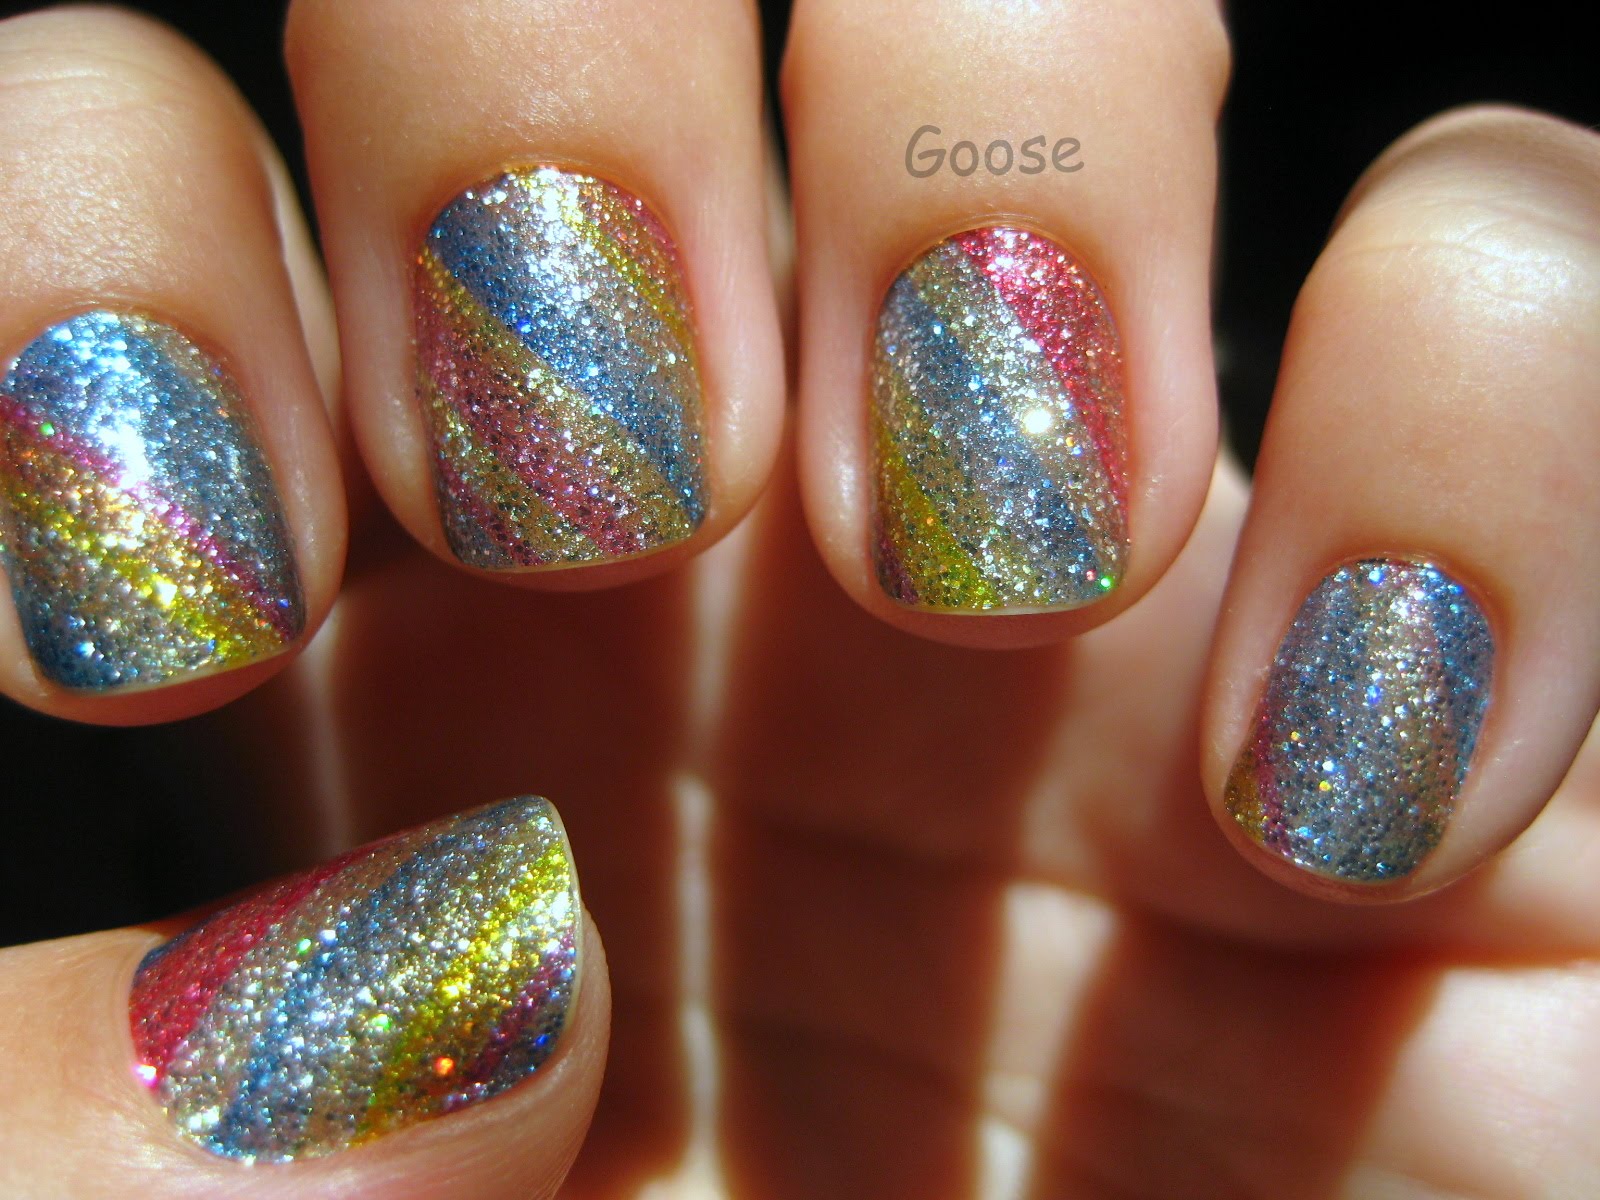 9. Incoco Glitter Nail Strips - wide 1